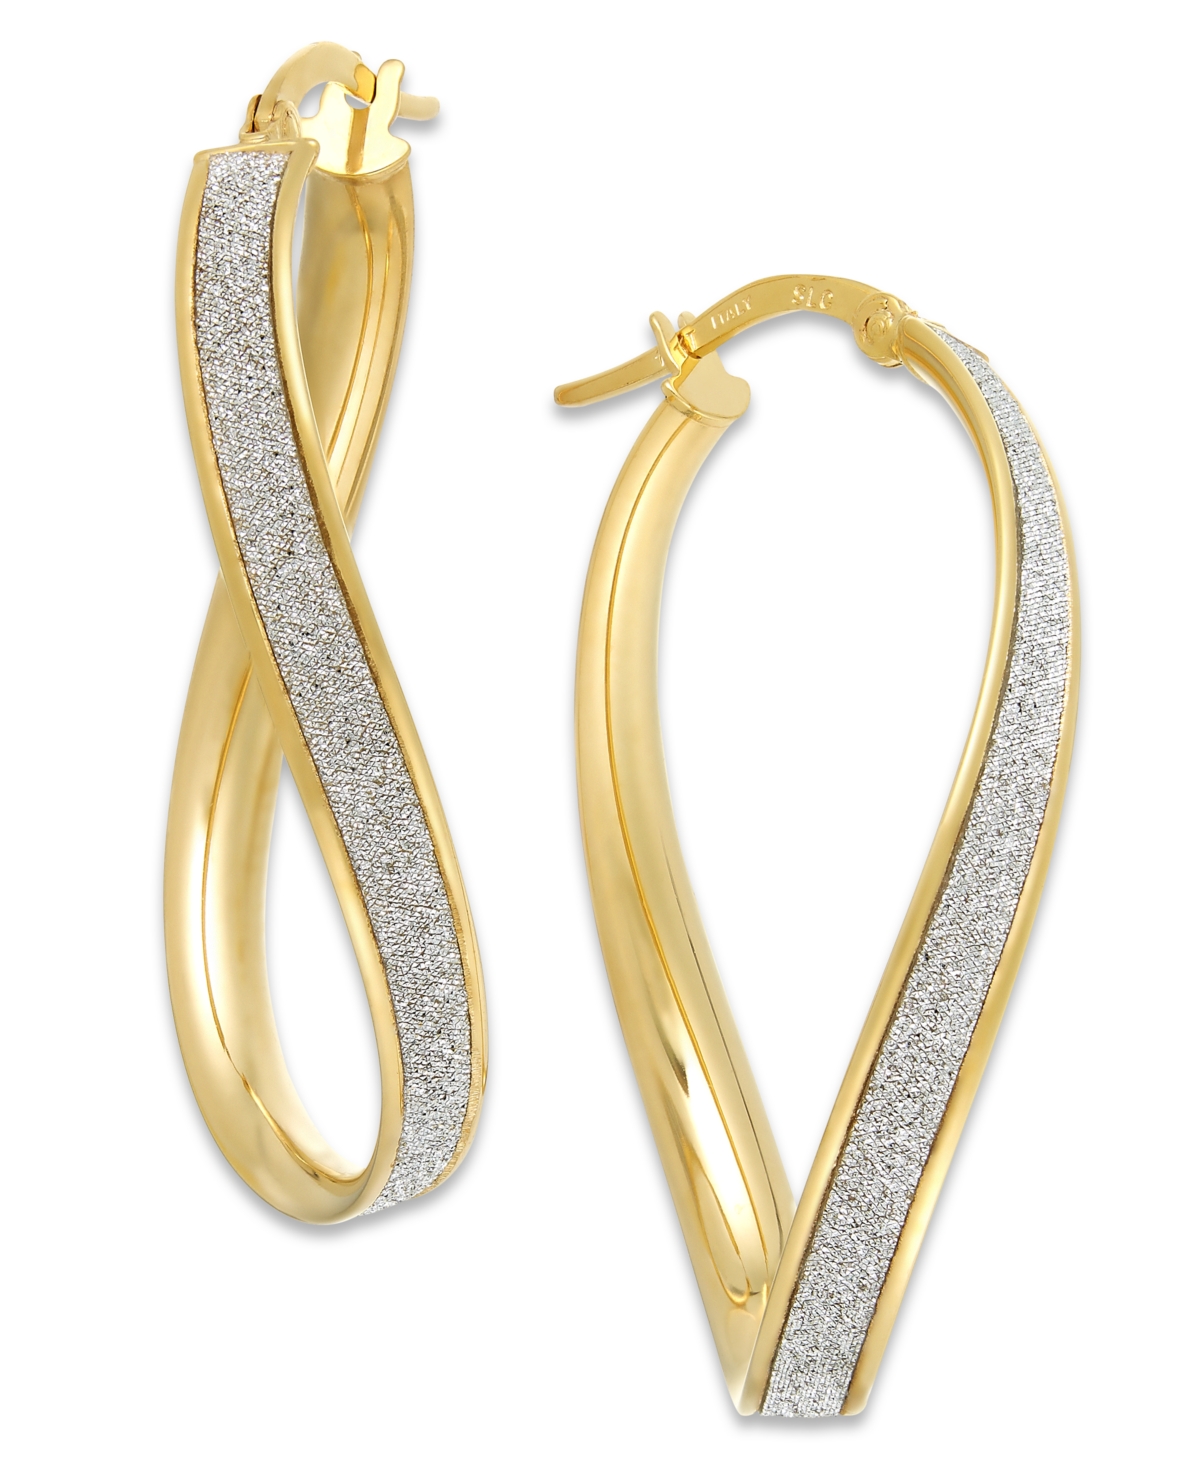 Glitter Wavy Hoop Earrings in 14k Gold - Yellow Gold